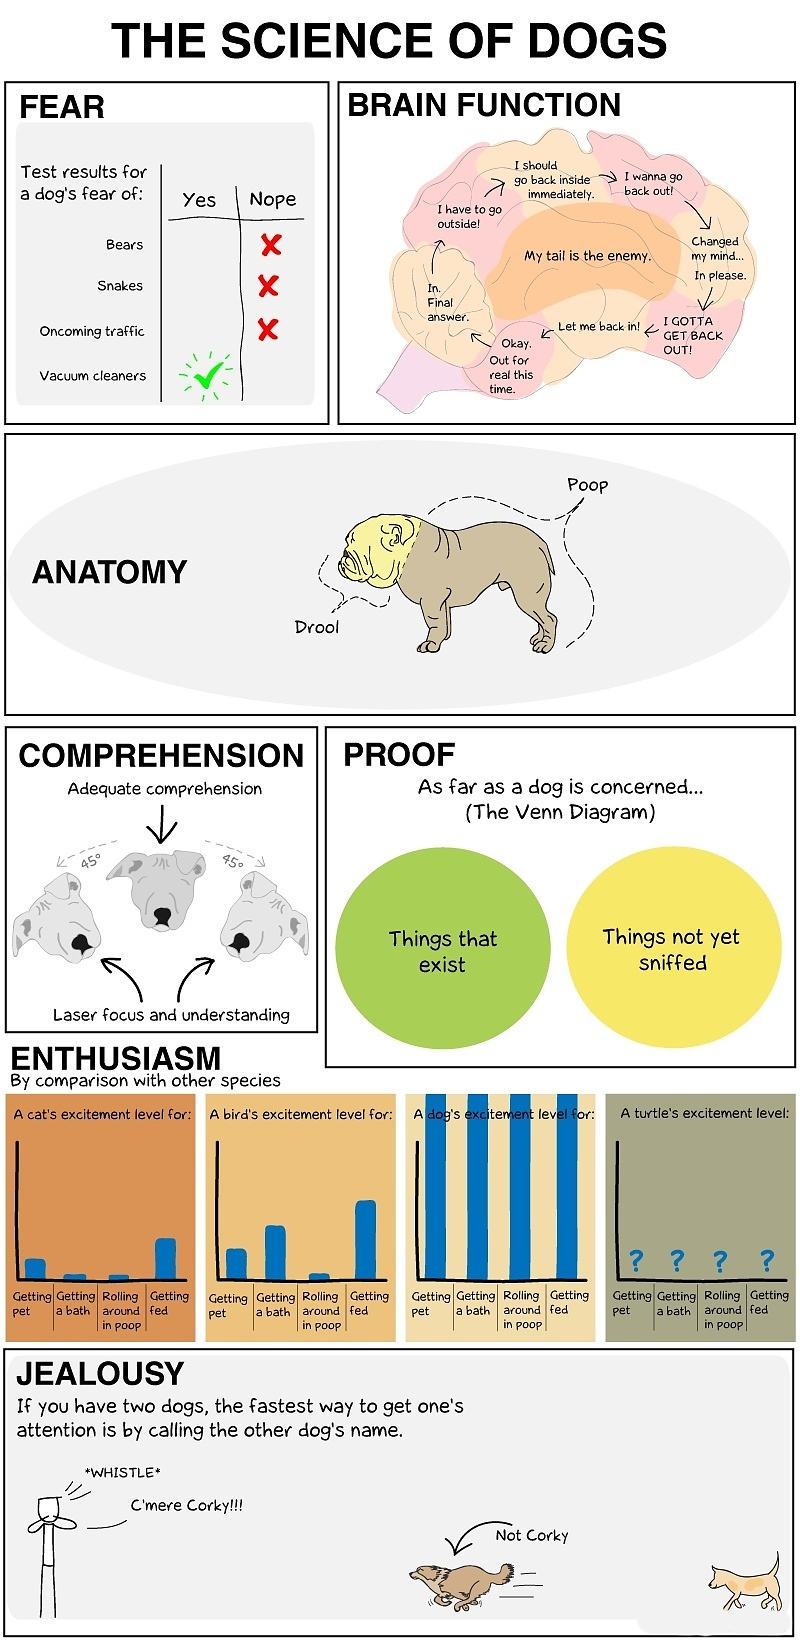 Obrázek -The science of dogs-      25.10.2012